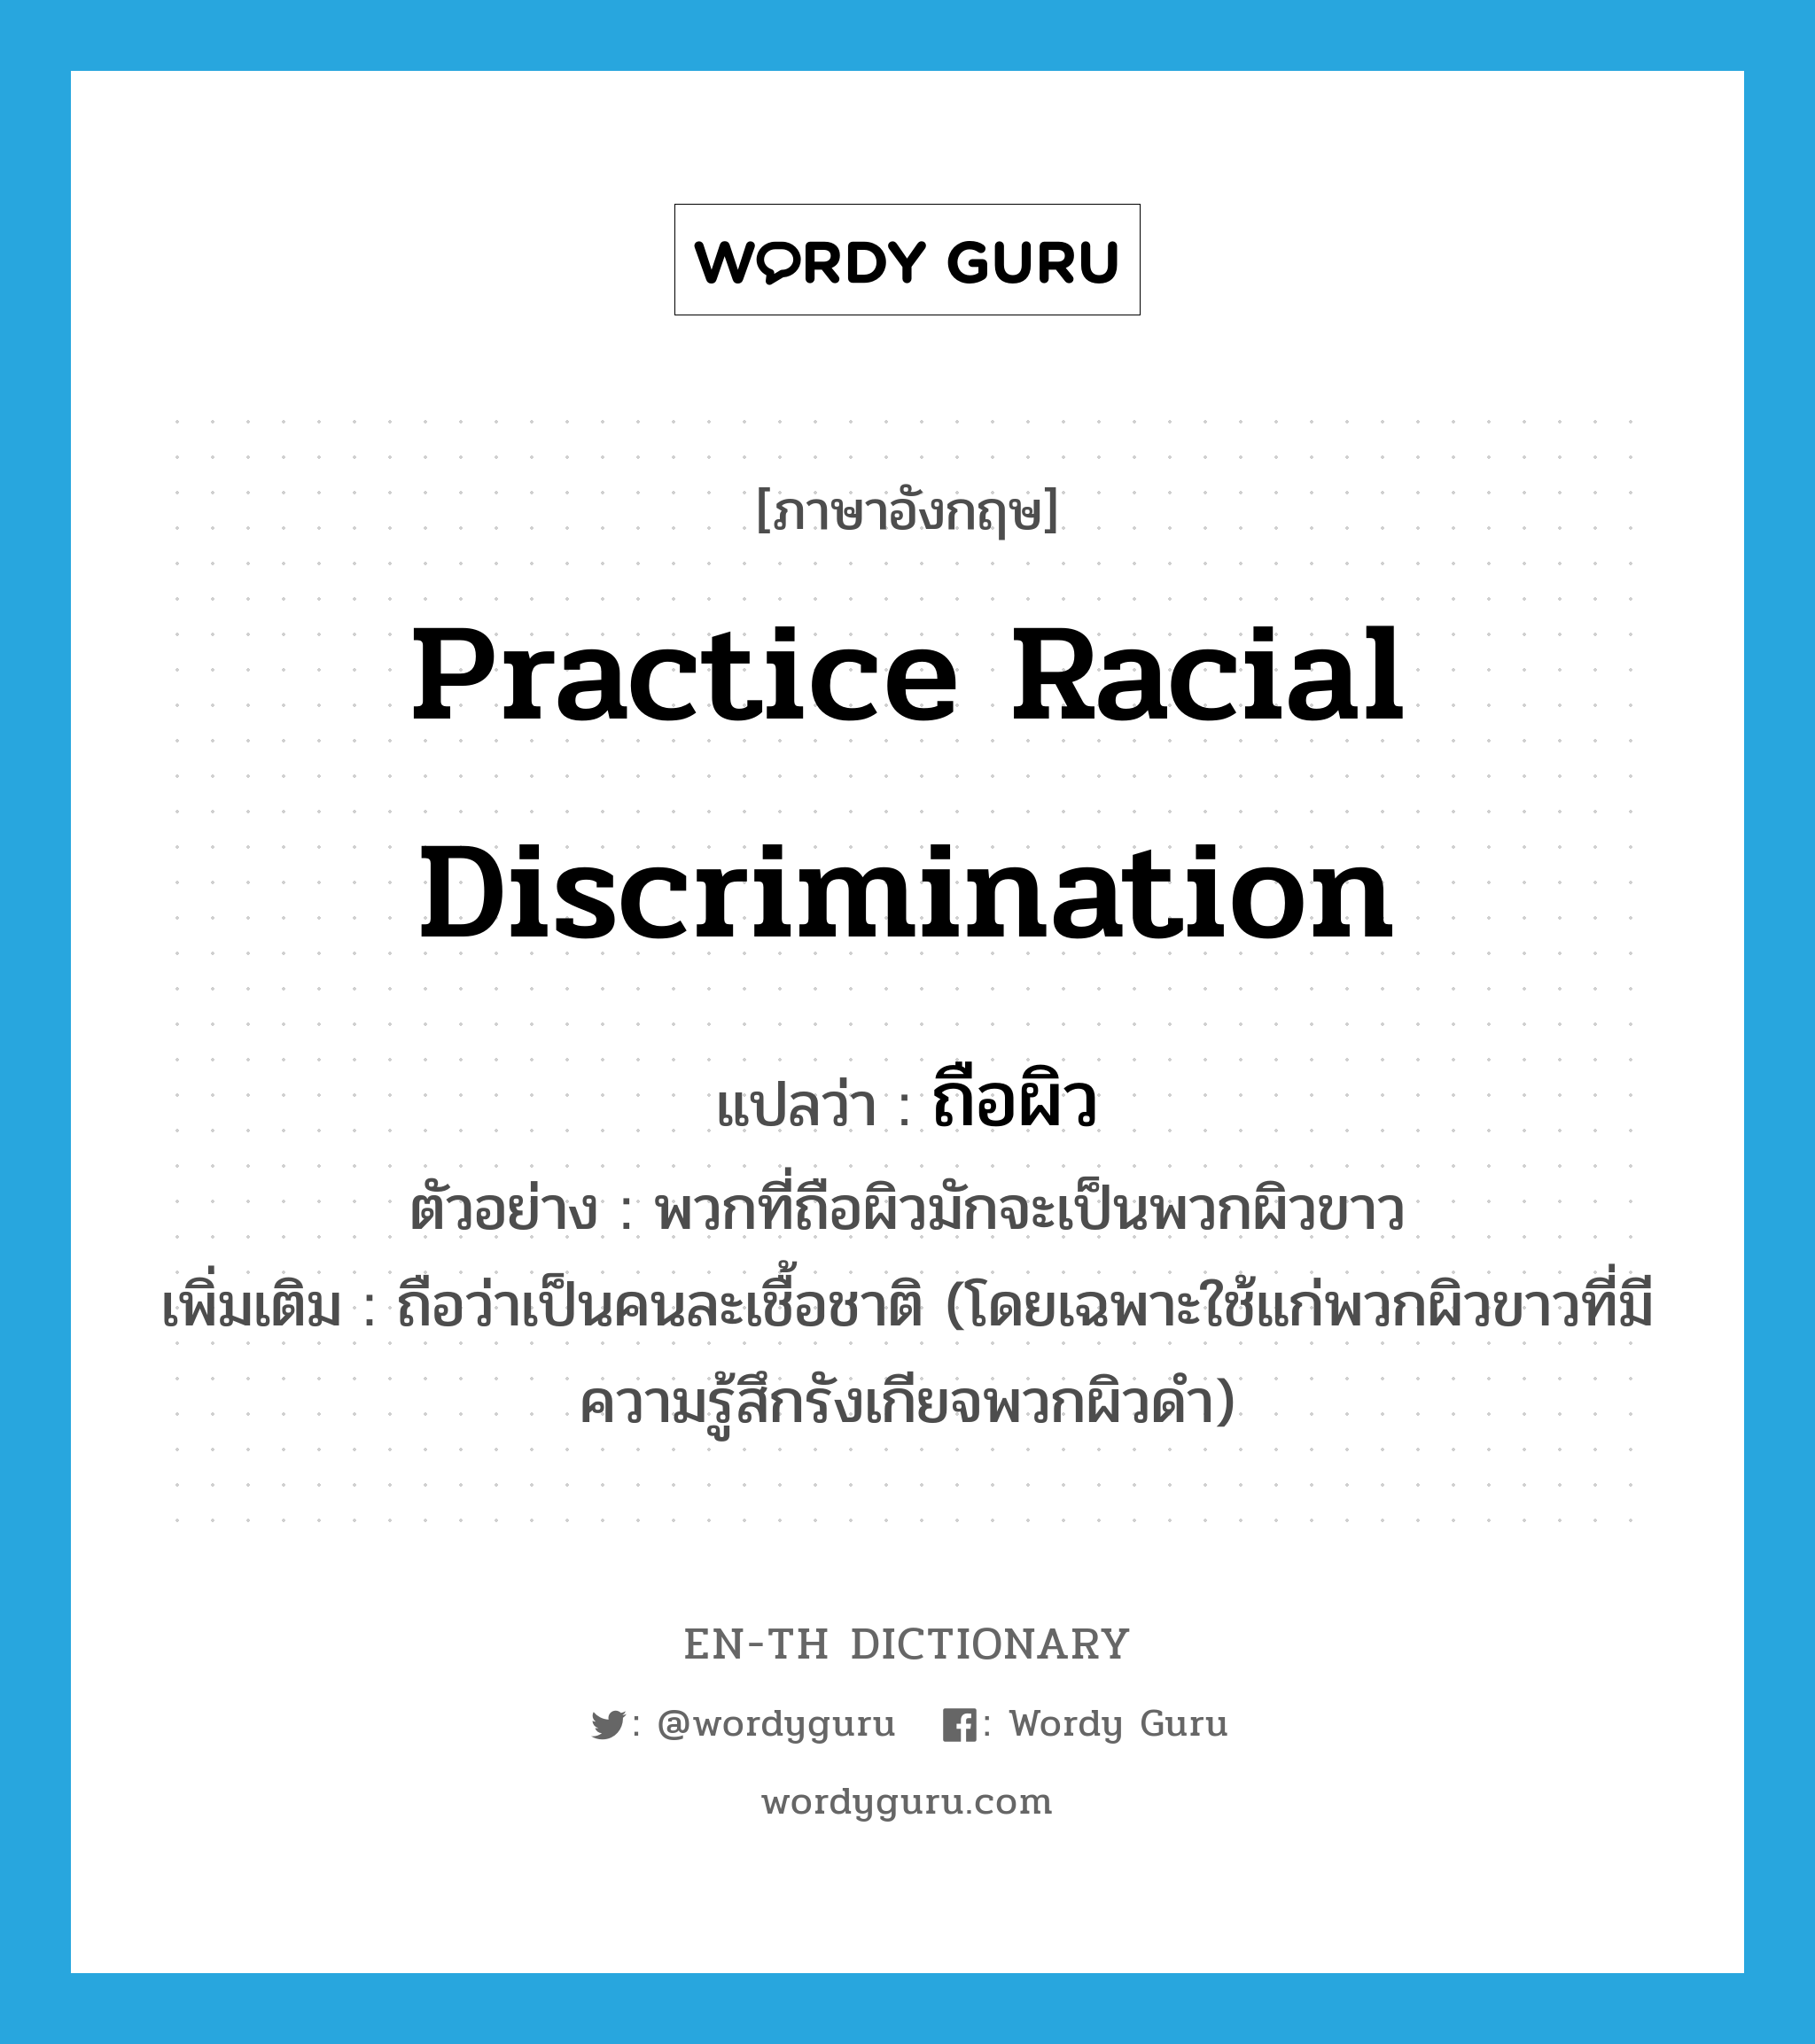 practice racial discrimination แปลว่า?, คำศัพท์ภาษาอังกฤษ practice racial discrimination แปลว่า ถือผิว ประเภท V ตัวอย่าง พวกที่ถือผิวมักจะเป็นพวกผิวขาว เพิ่มเติม ถือว่าเป็นคนละเชื้อชาติ (โดยเฉพาะใช้แก่พวกผิวขาวที่มีความรู้สึกรังเกียจพวกผิวดำ) หมวด V